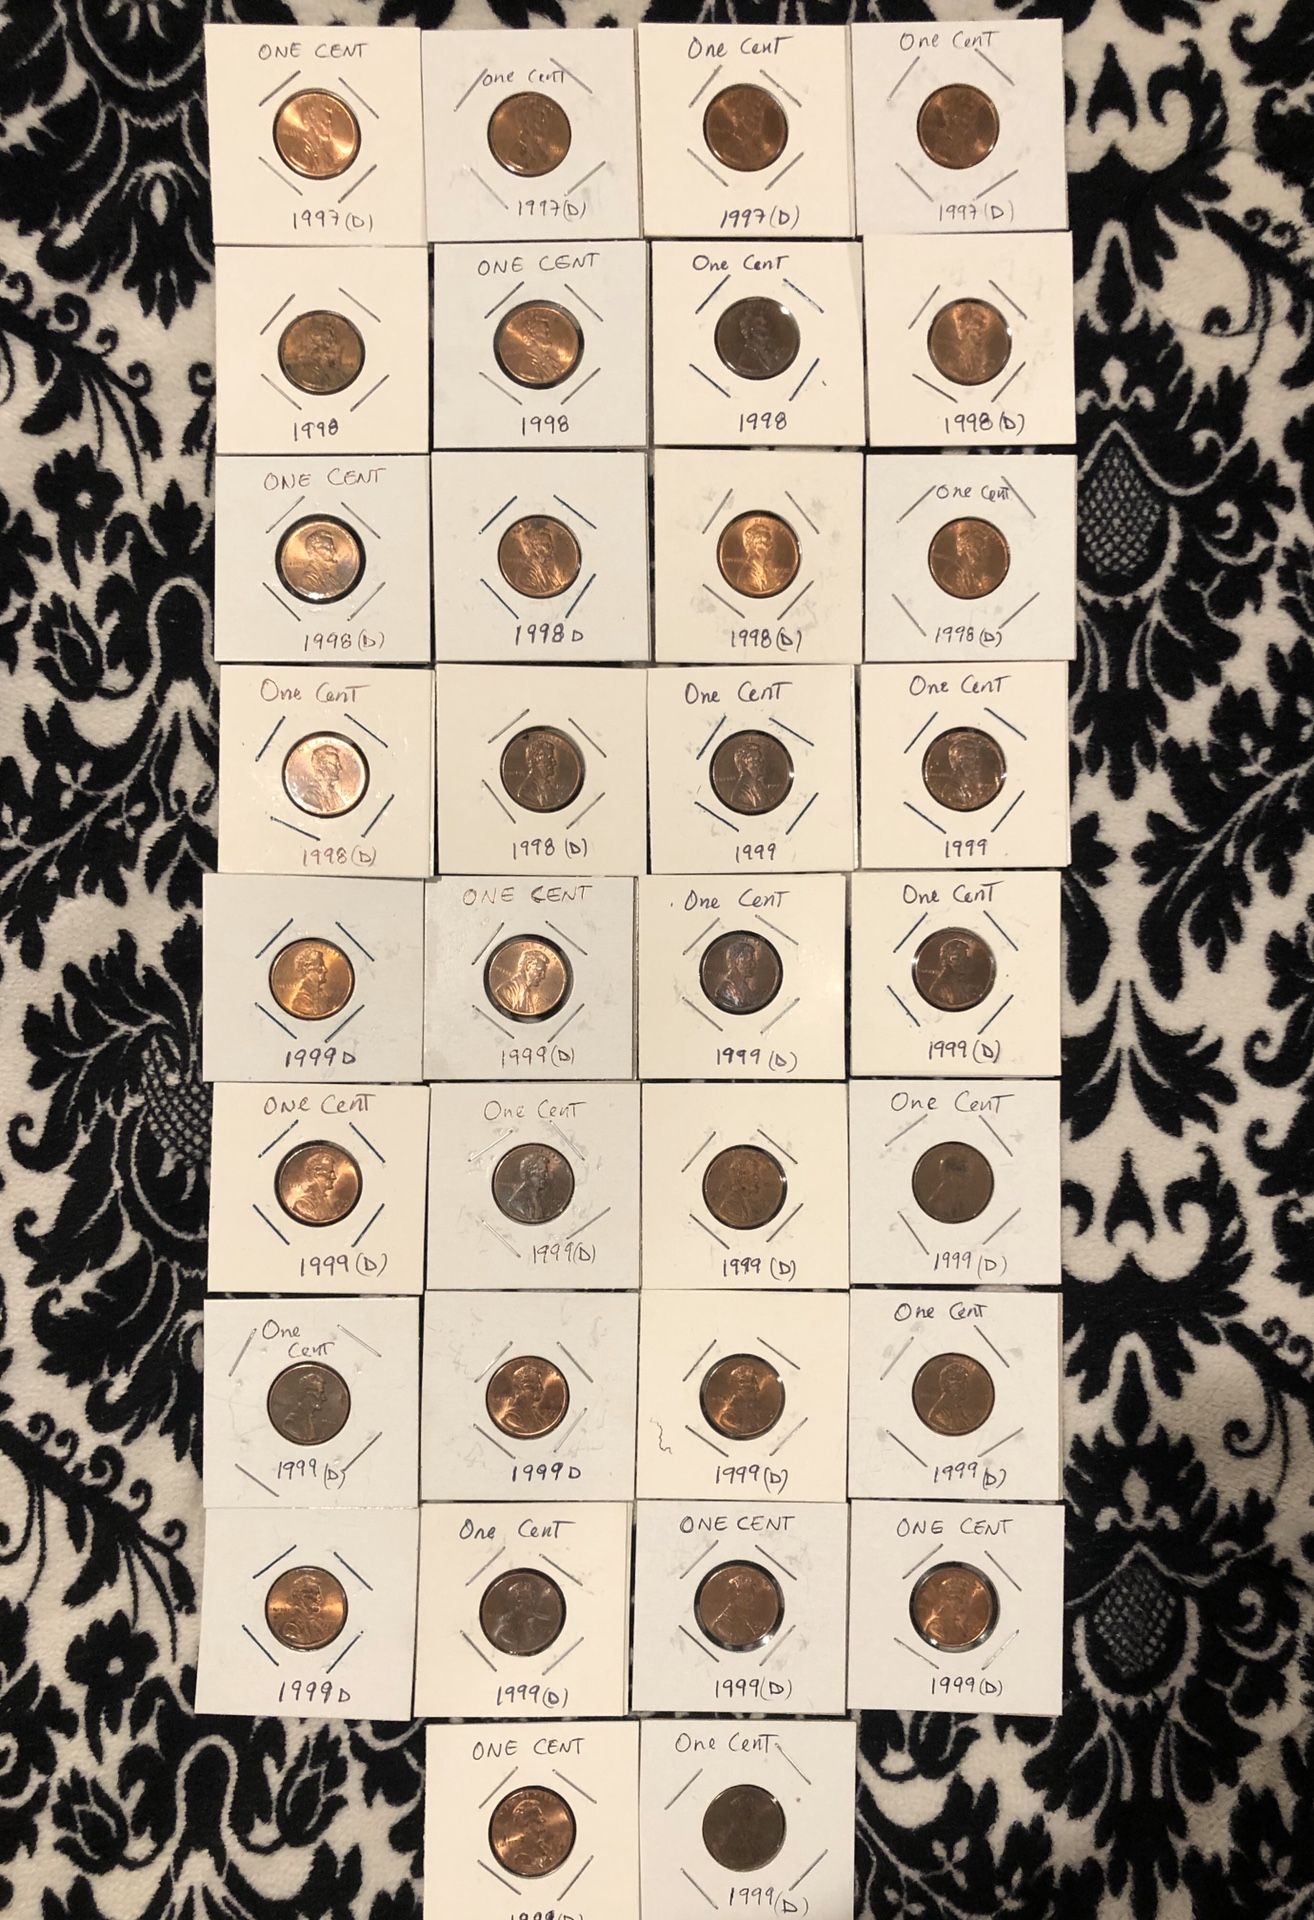 Lot 34 coins; One Cent 1997D(4),1998(3),1998D(7),1999(2),1999D(18)